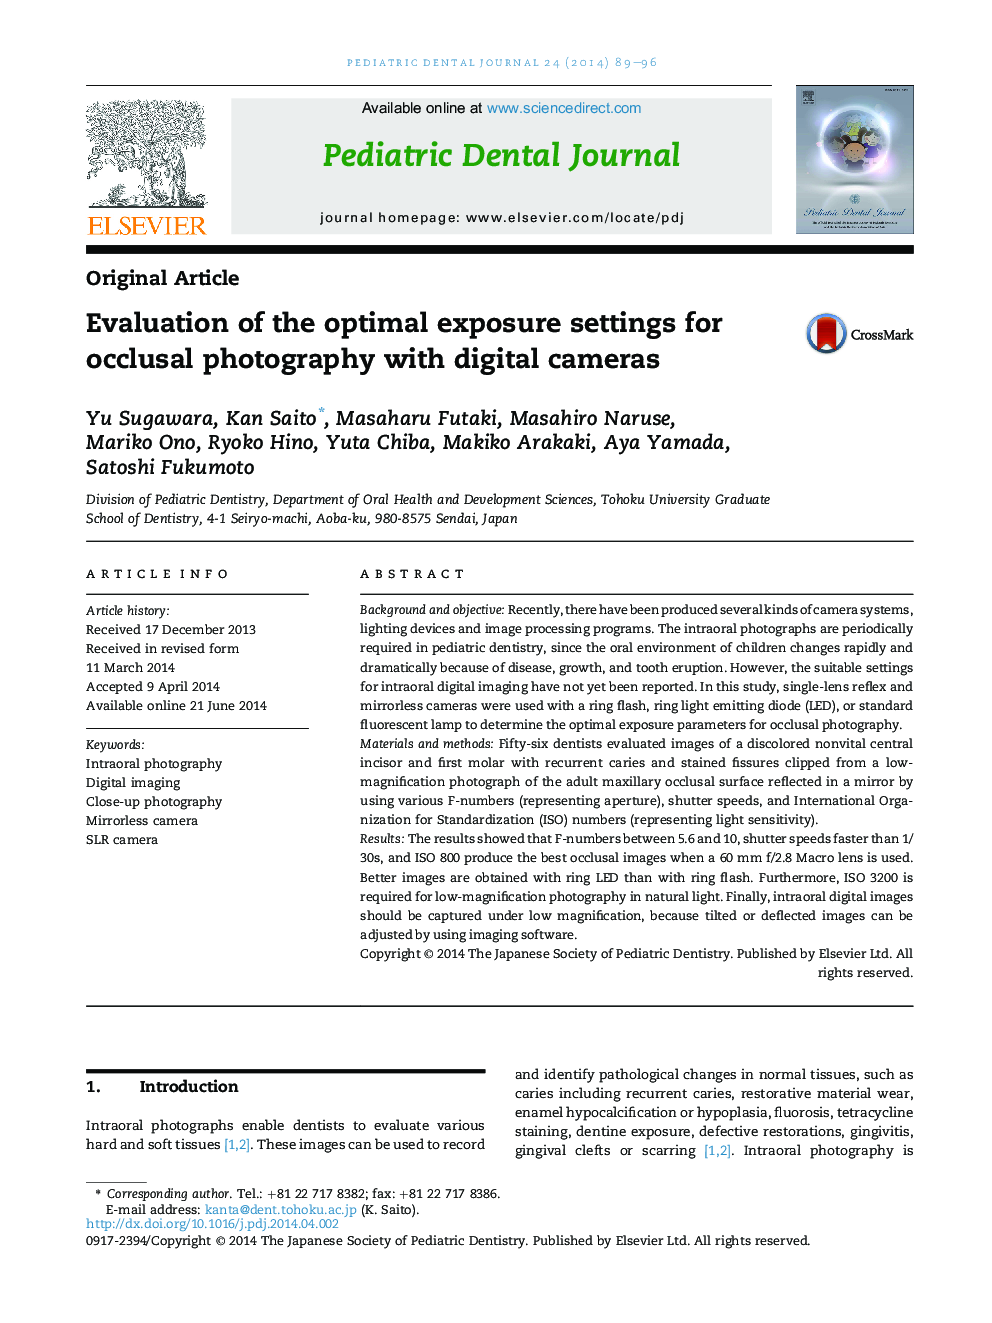 ارزیابی تنظیمات نوردهی بهینه برای عکاسی اکلوزالی با دوربین های دیجیتال 